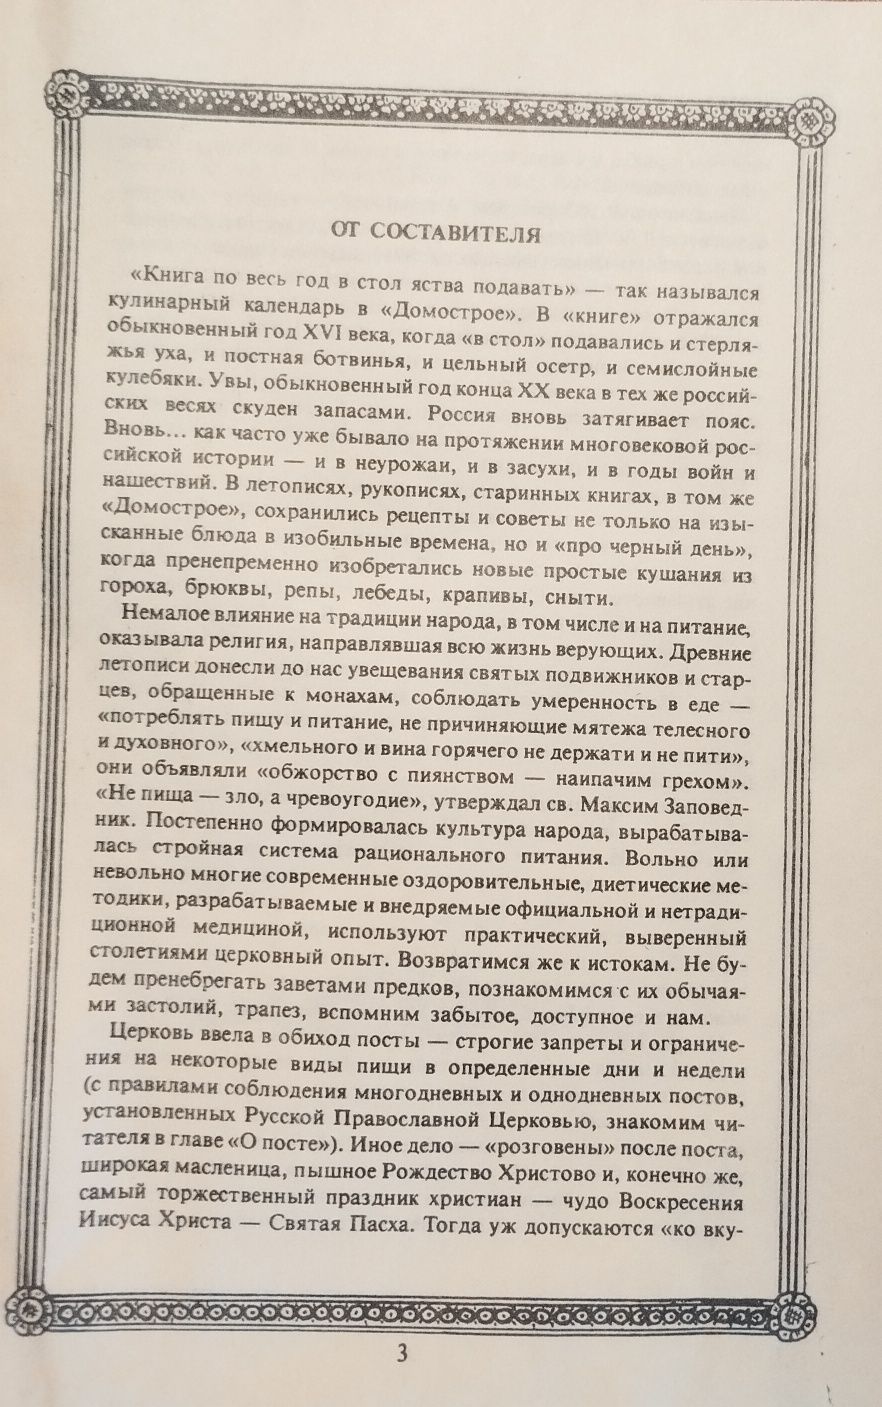 Конструирование женского верхнего платья 1951 г. изд.